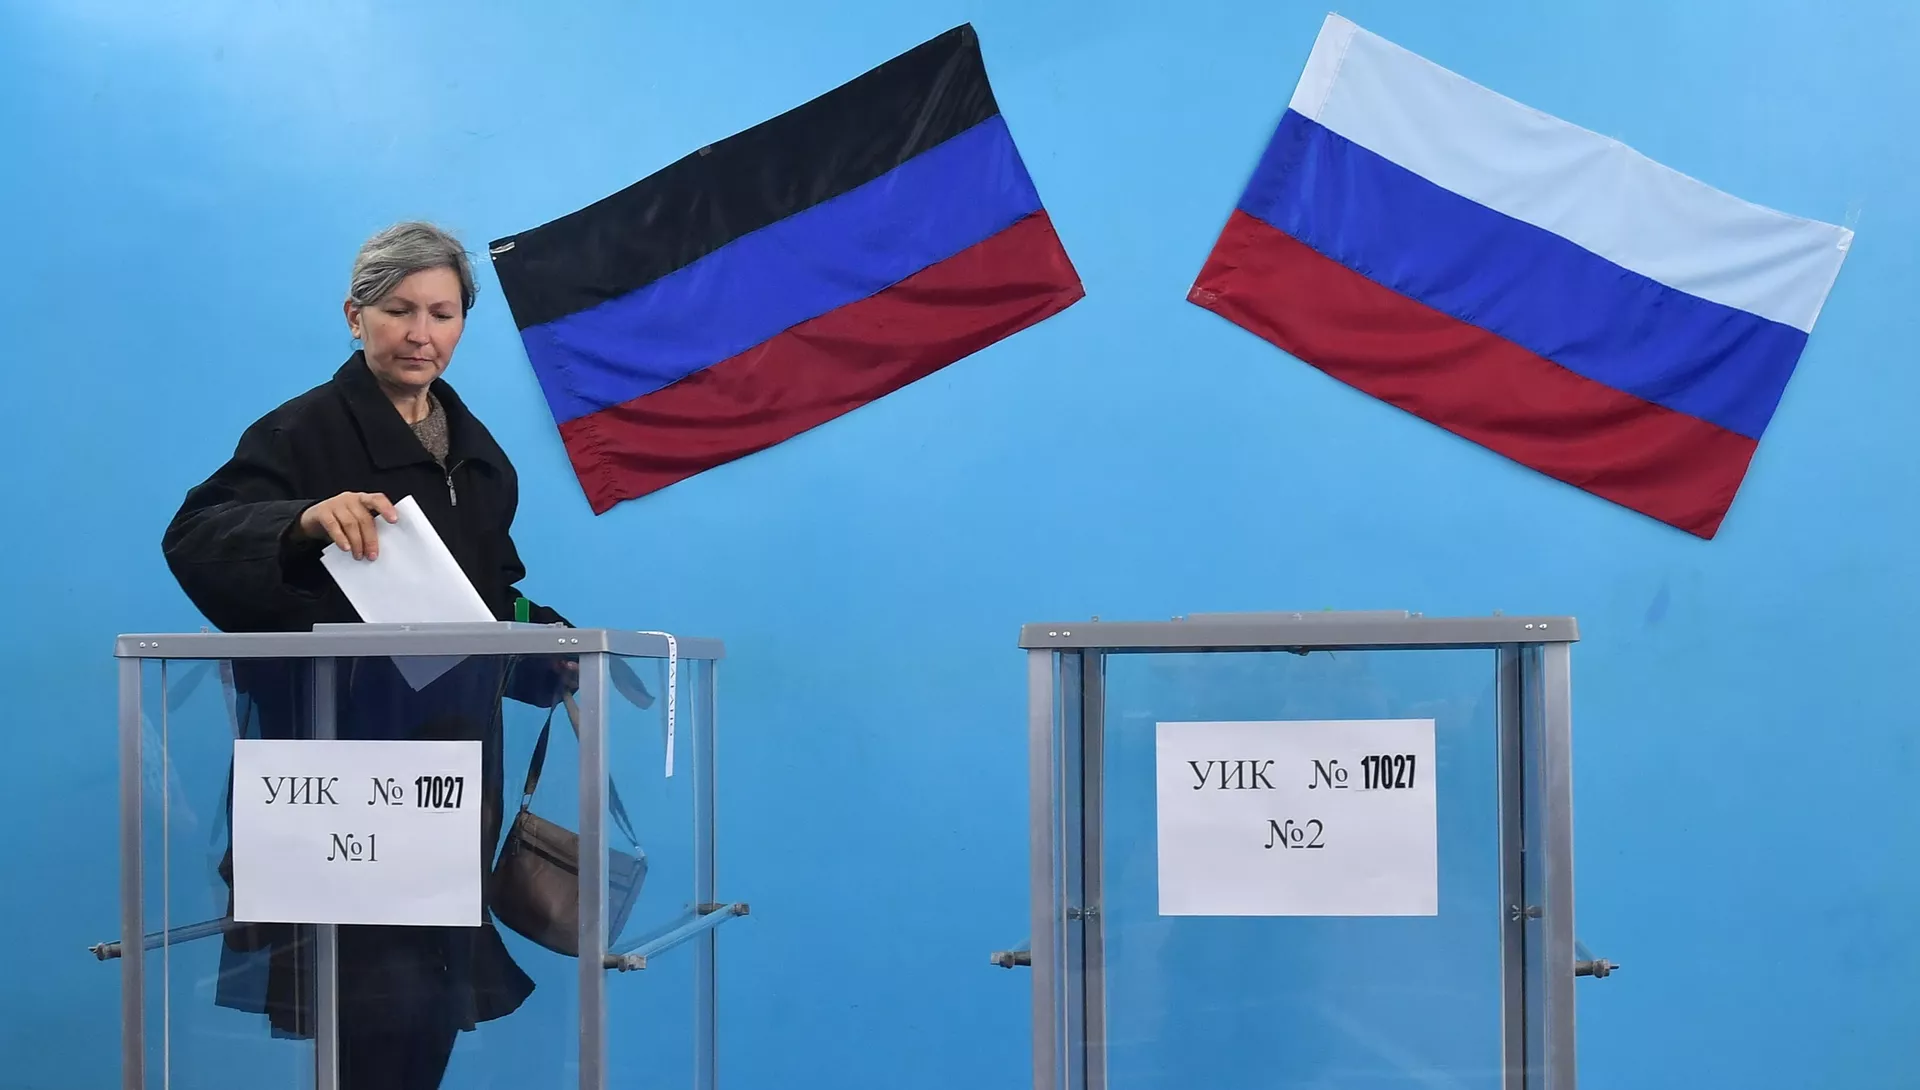 Glasovanje v Donbasu